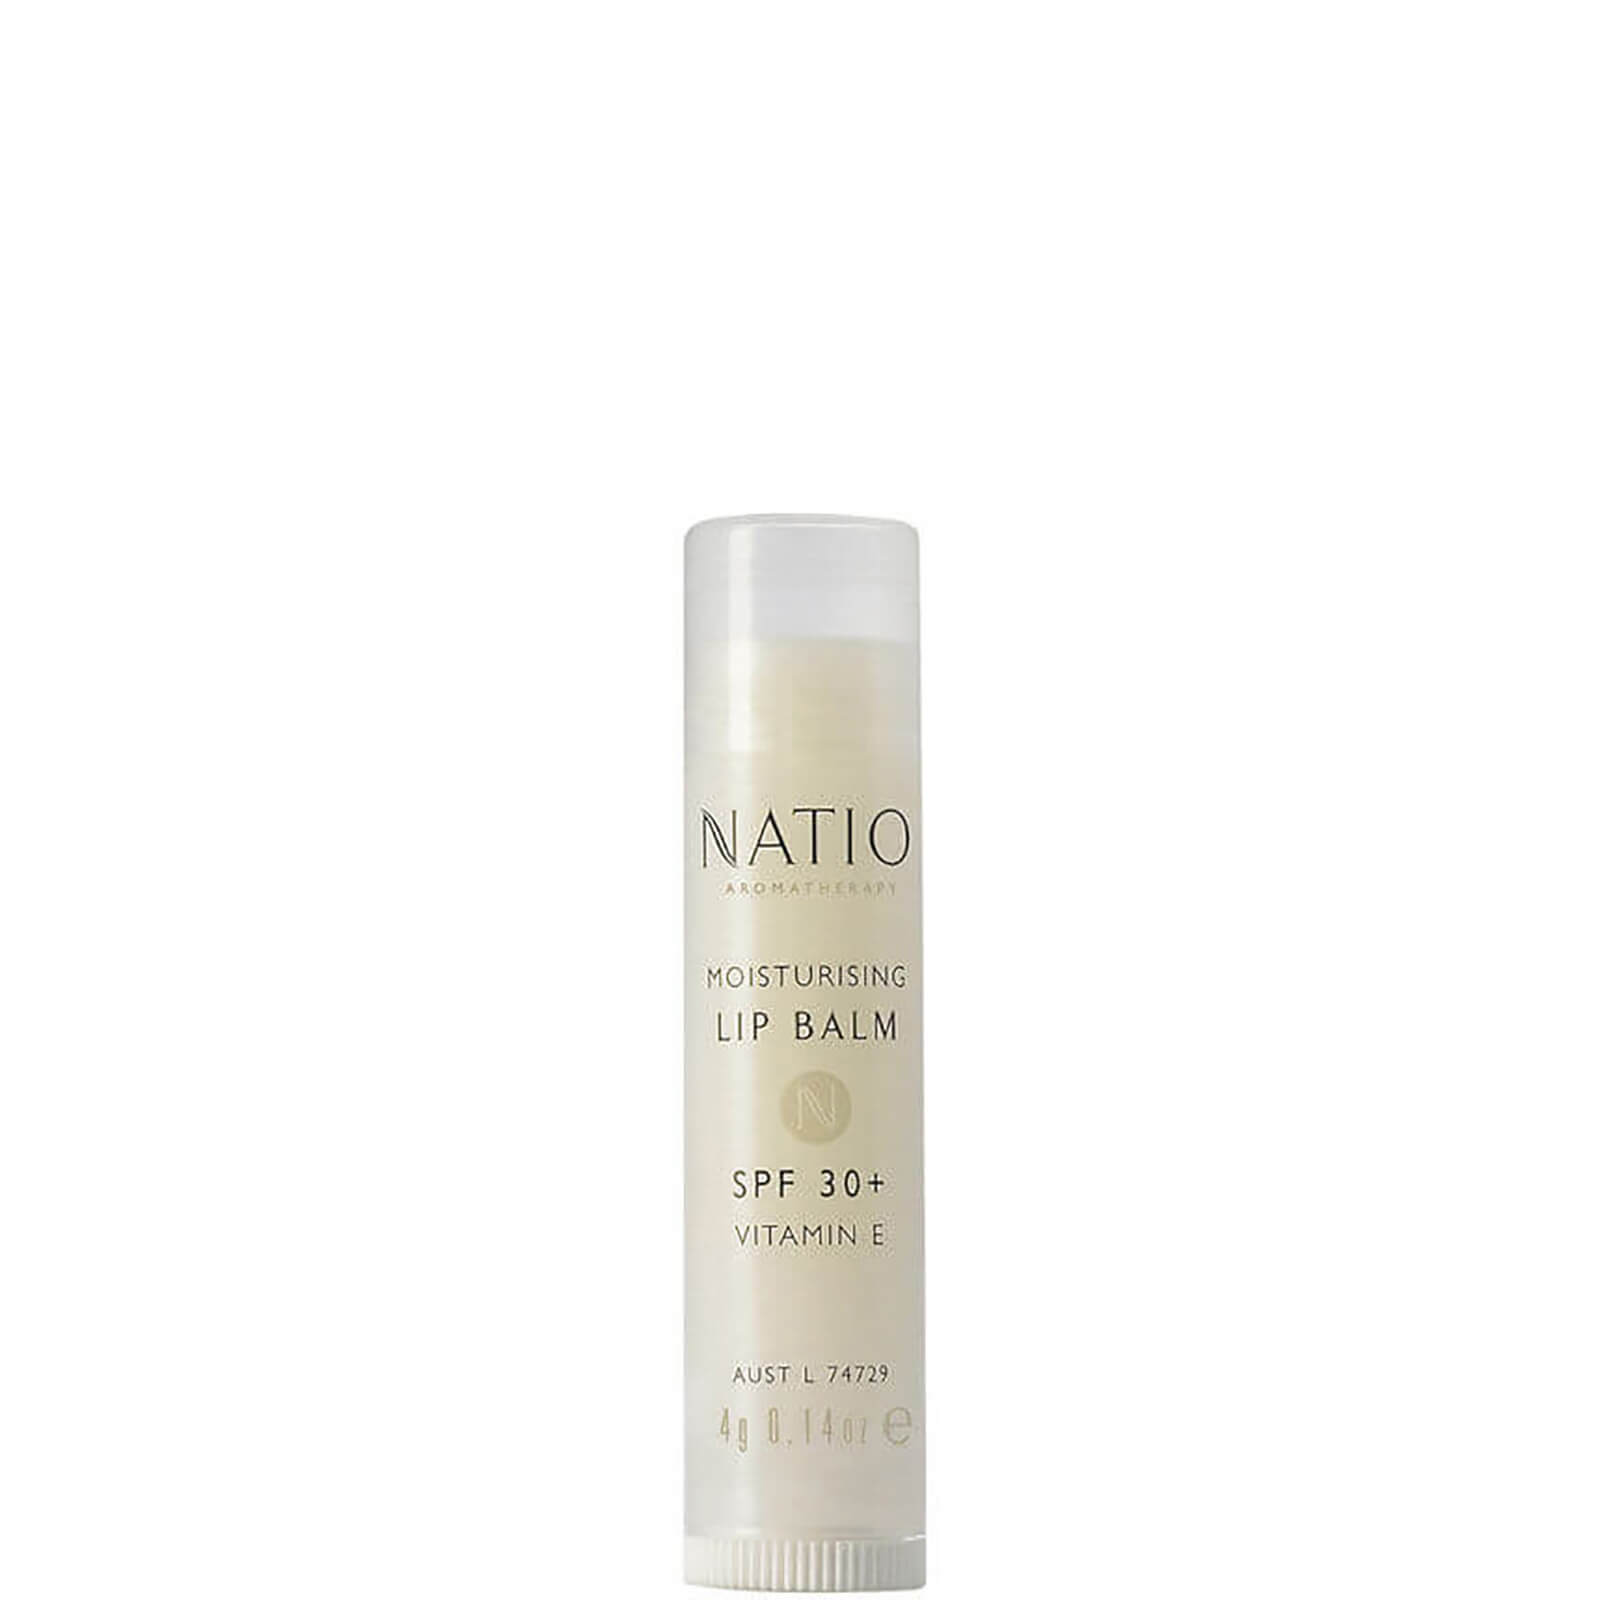 natio moisturising lip balm spf 30+ (4g)